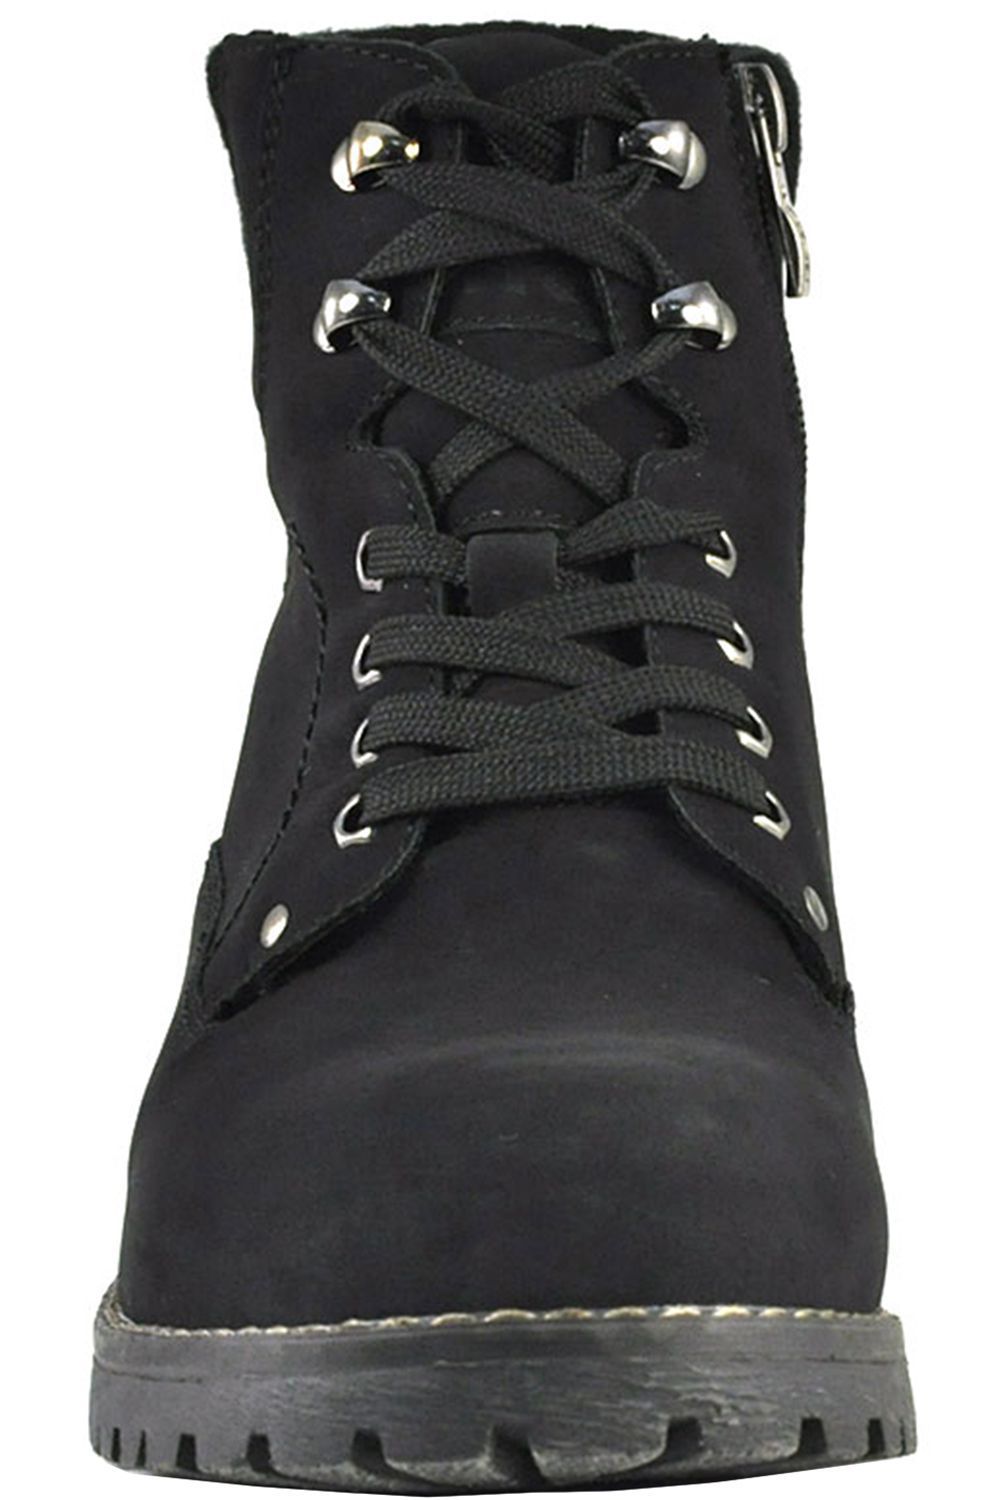 Ботинки Keddo, размер 40, цвет черный 578609/01-01 - фото 5